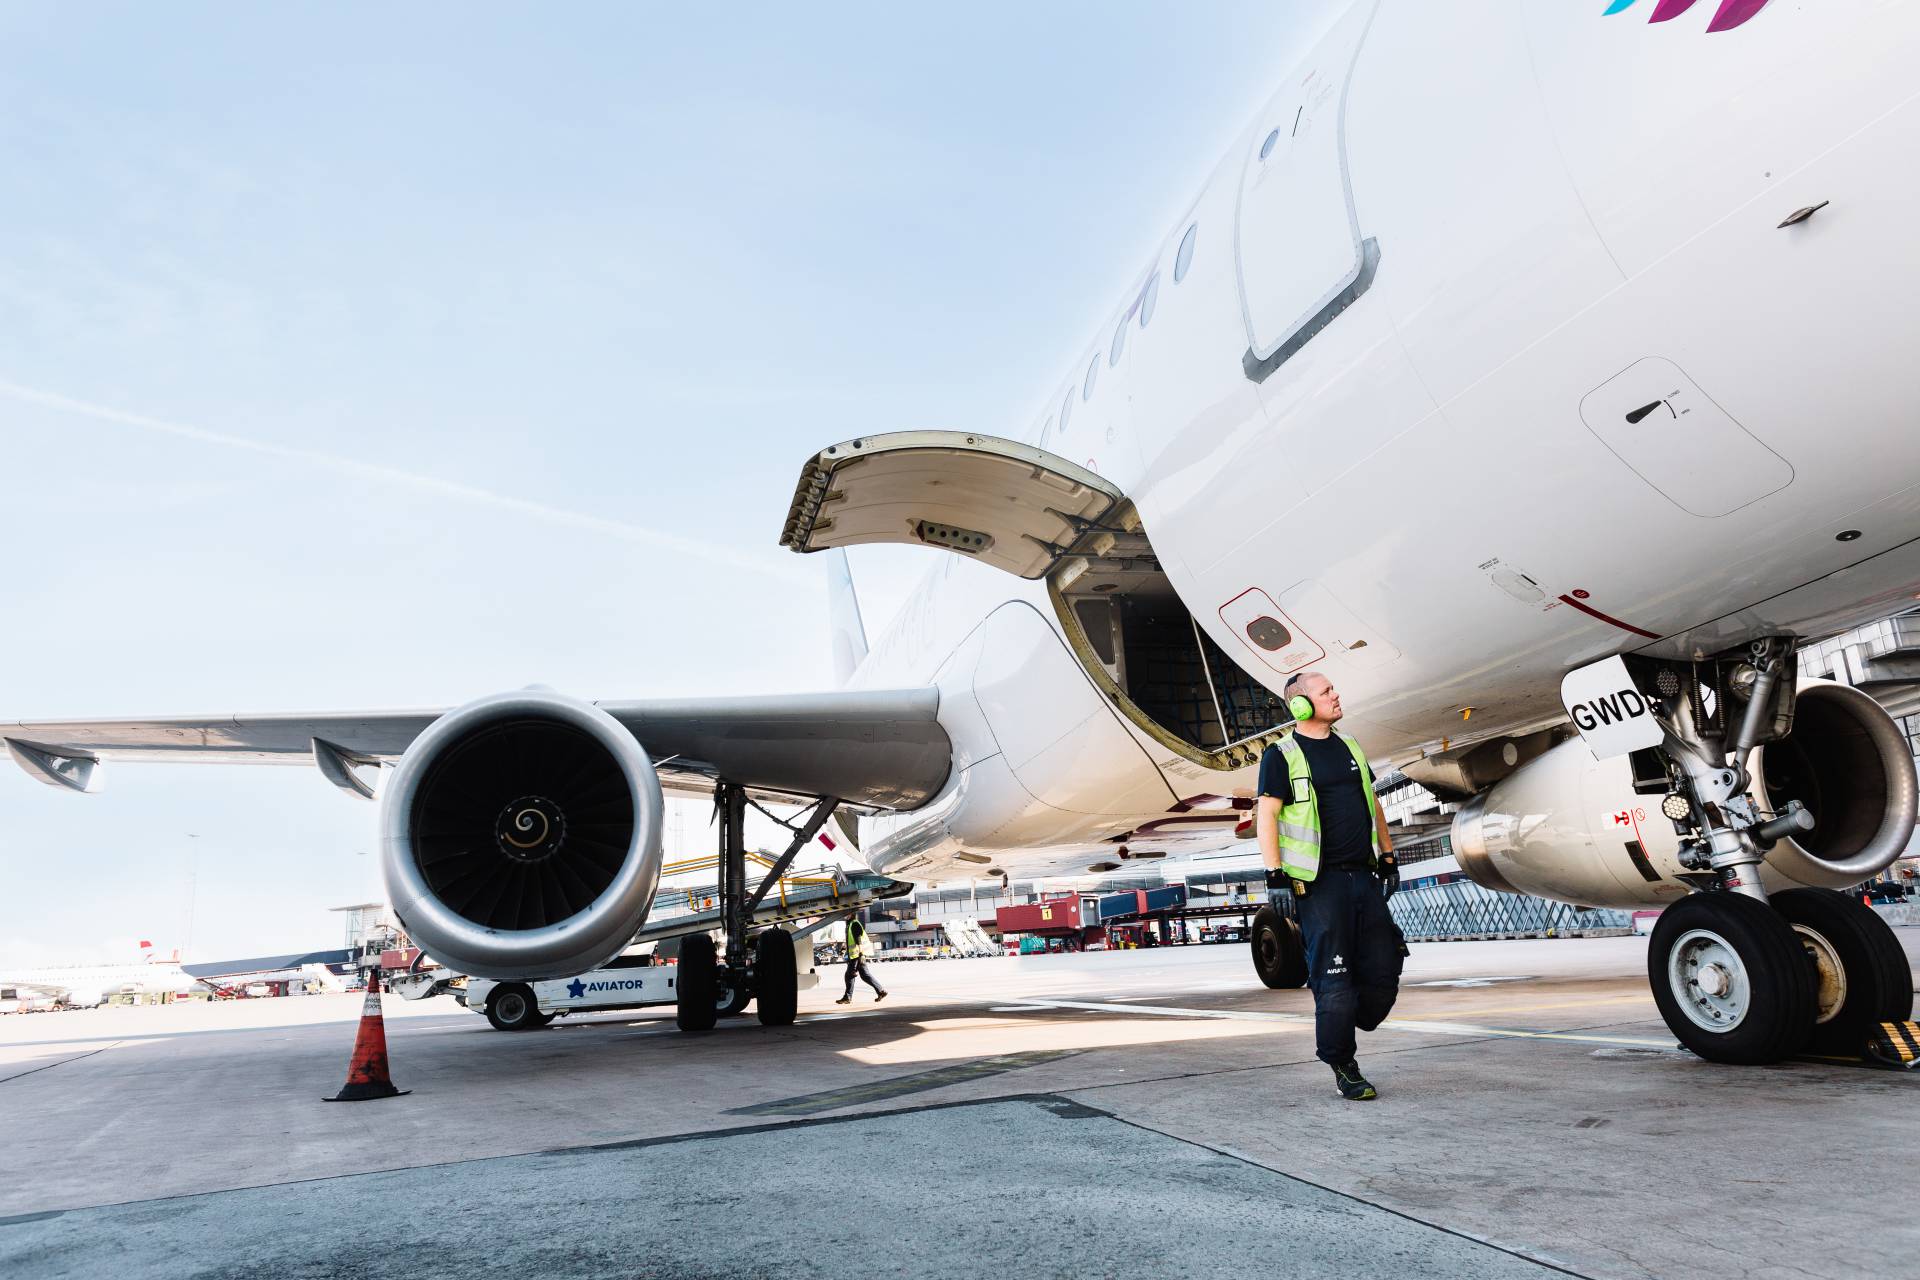 Handlingagenten Aviator förlänger samarbetet med Finnair med ytterligare fem år på Helsingfors flygplats